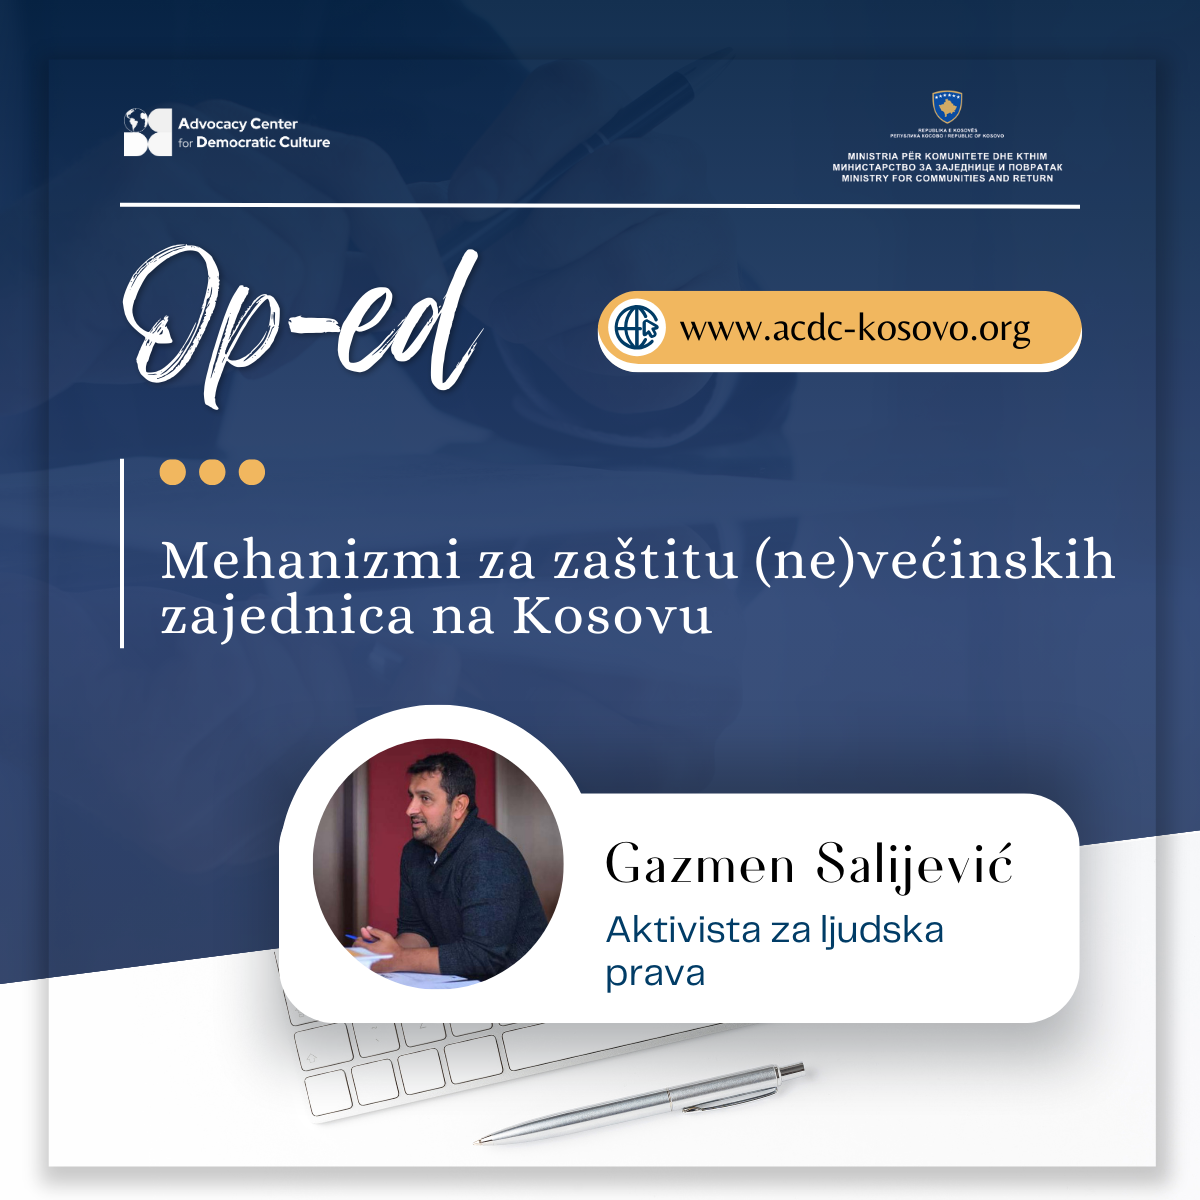 op-ed-mehanizmi-za-zastitu-nevecinskih-zajednica-na-kosovu